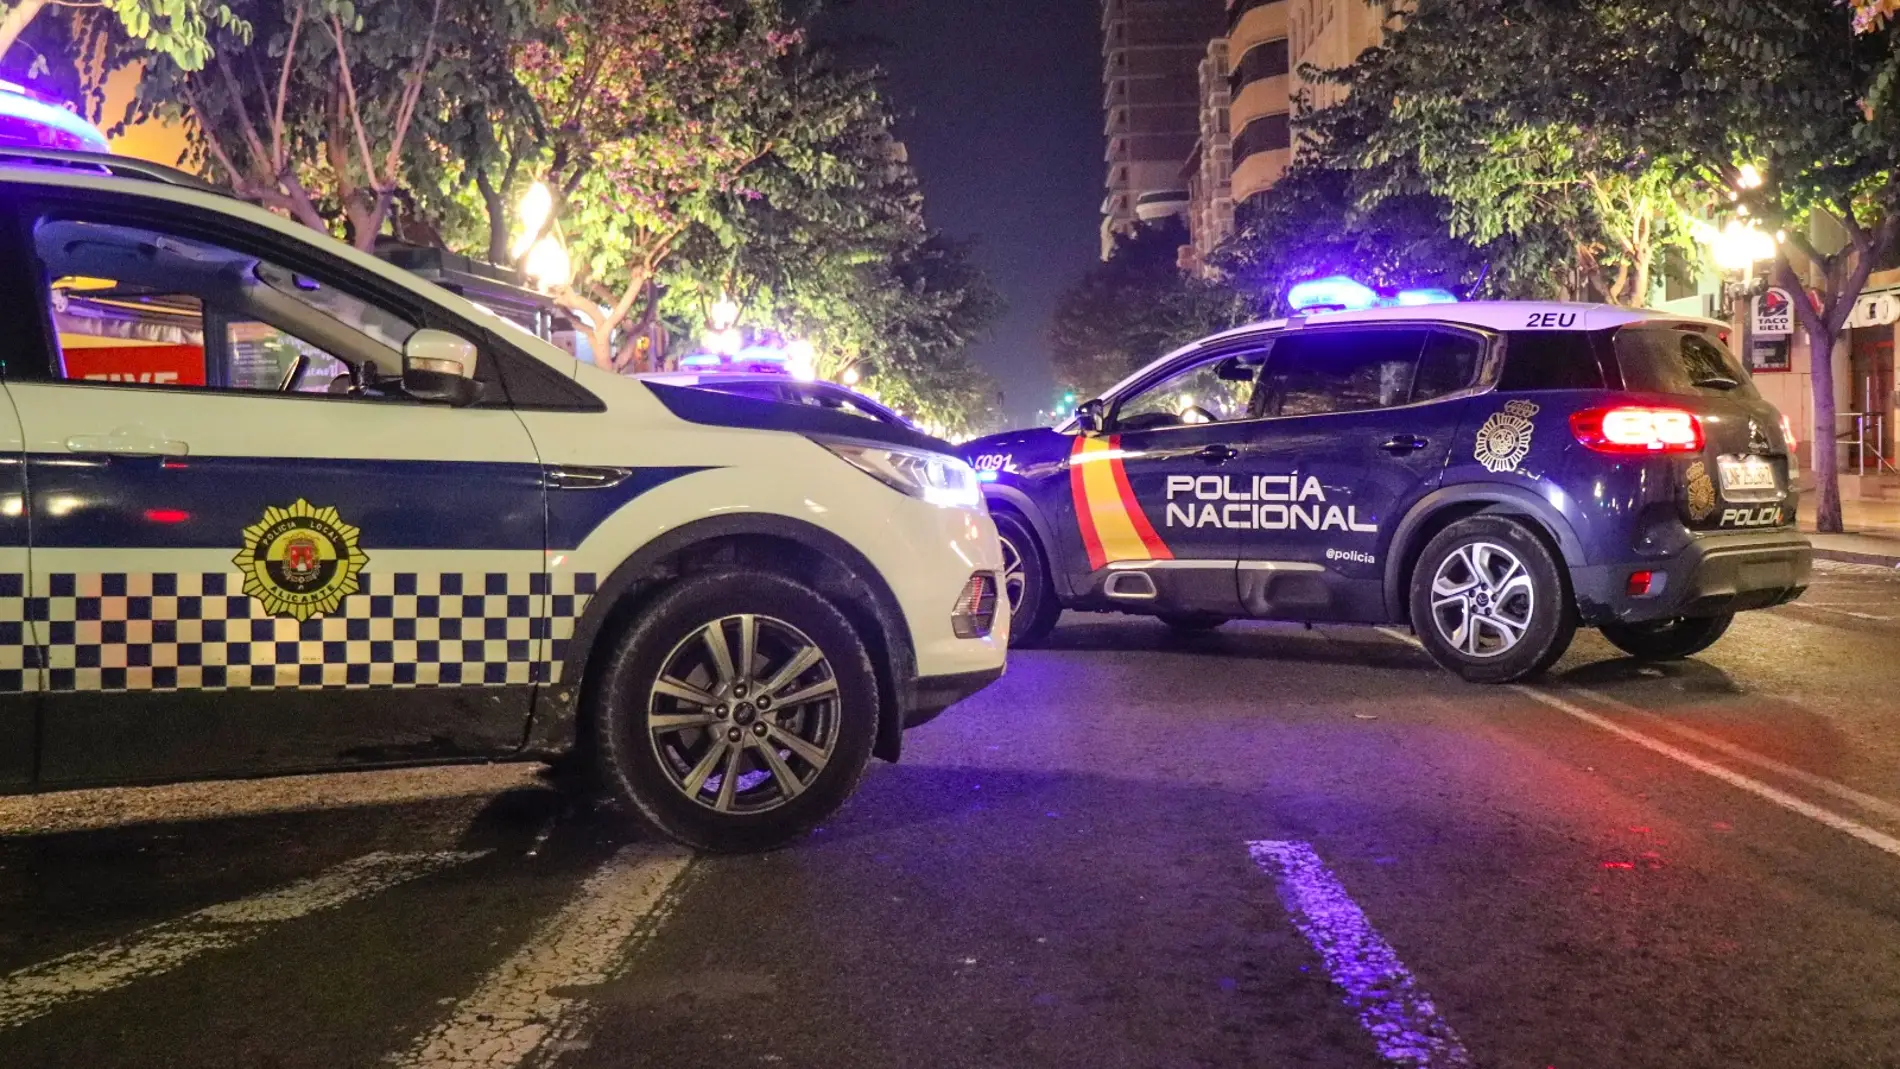 Dos patrullas de la Policía Local y Nacional